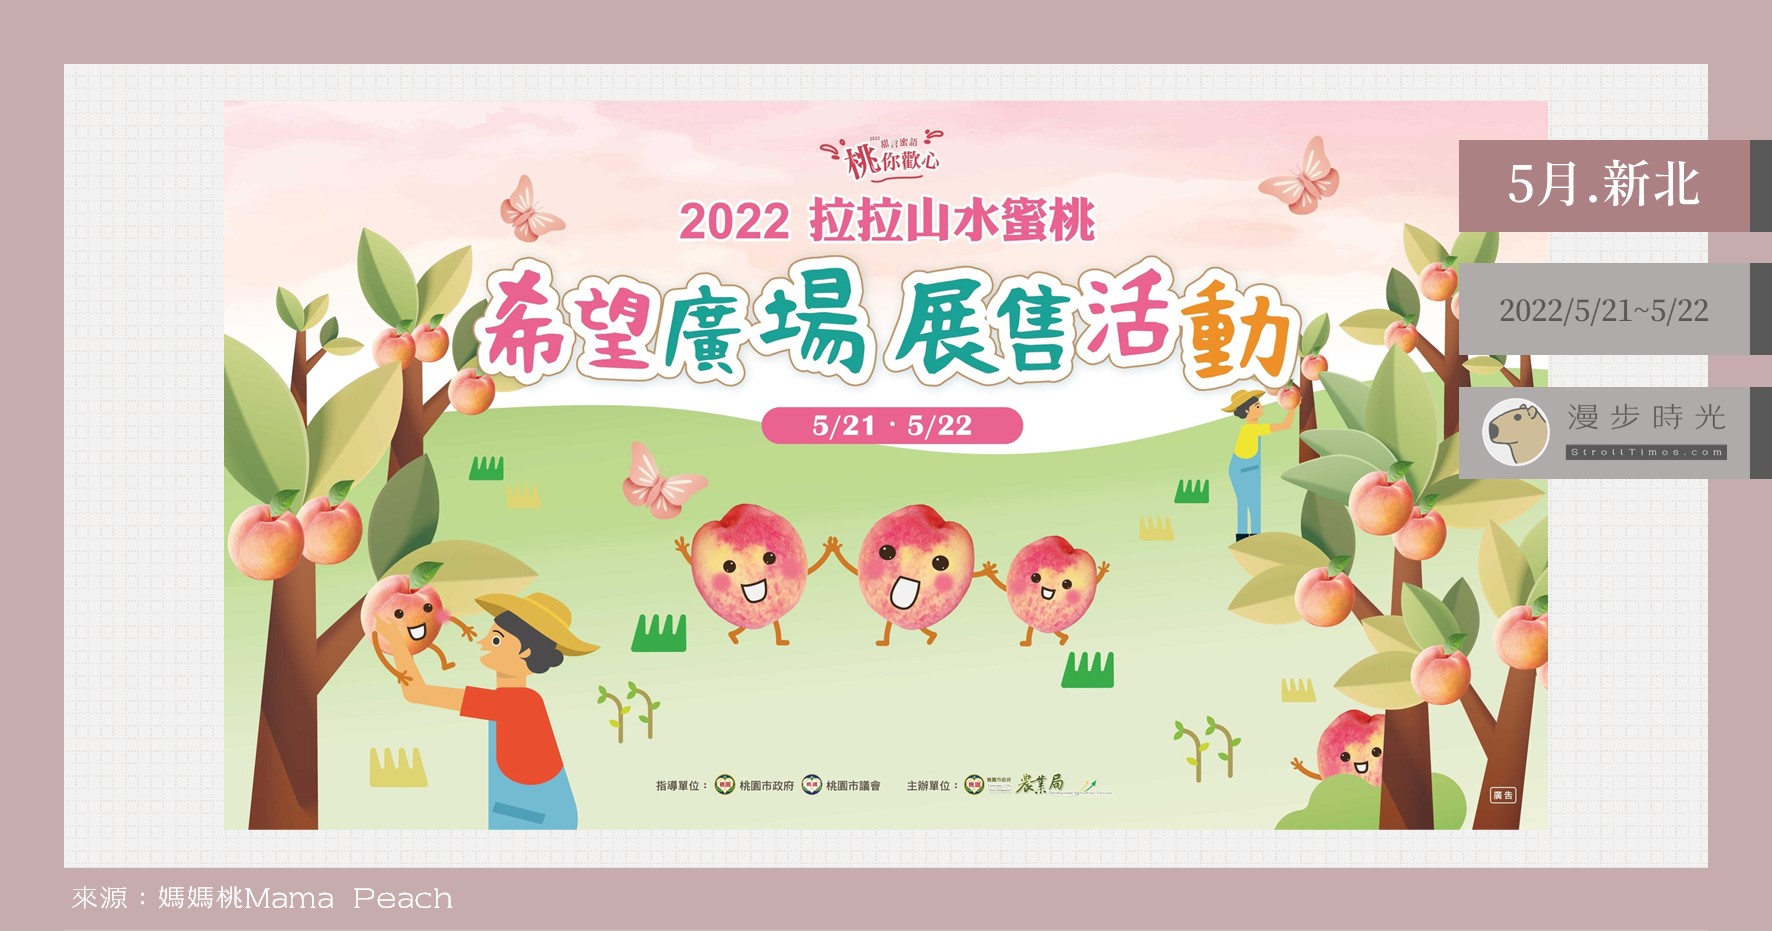 台北也能直購拉拉山水蜜桃！「2022拉拉山水蜜桃希望廣場展售活動」兩天快閃，也能預定快取